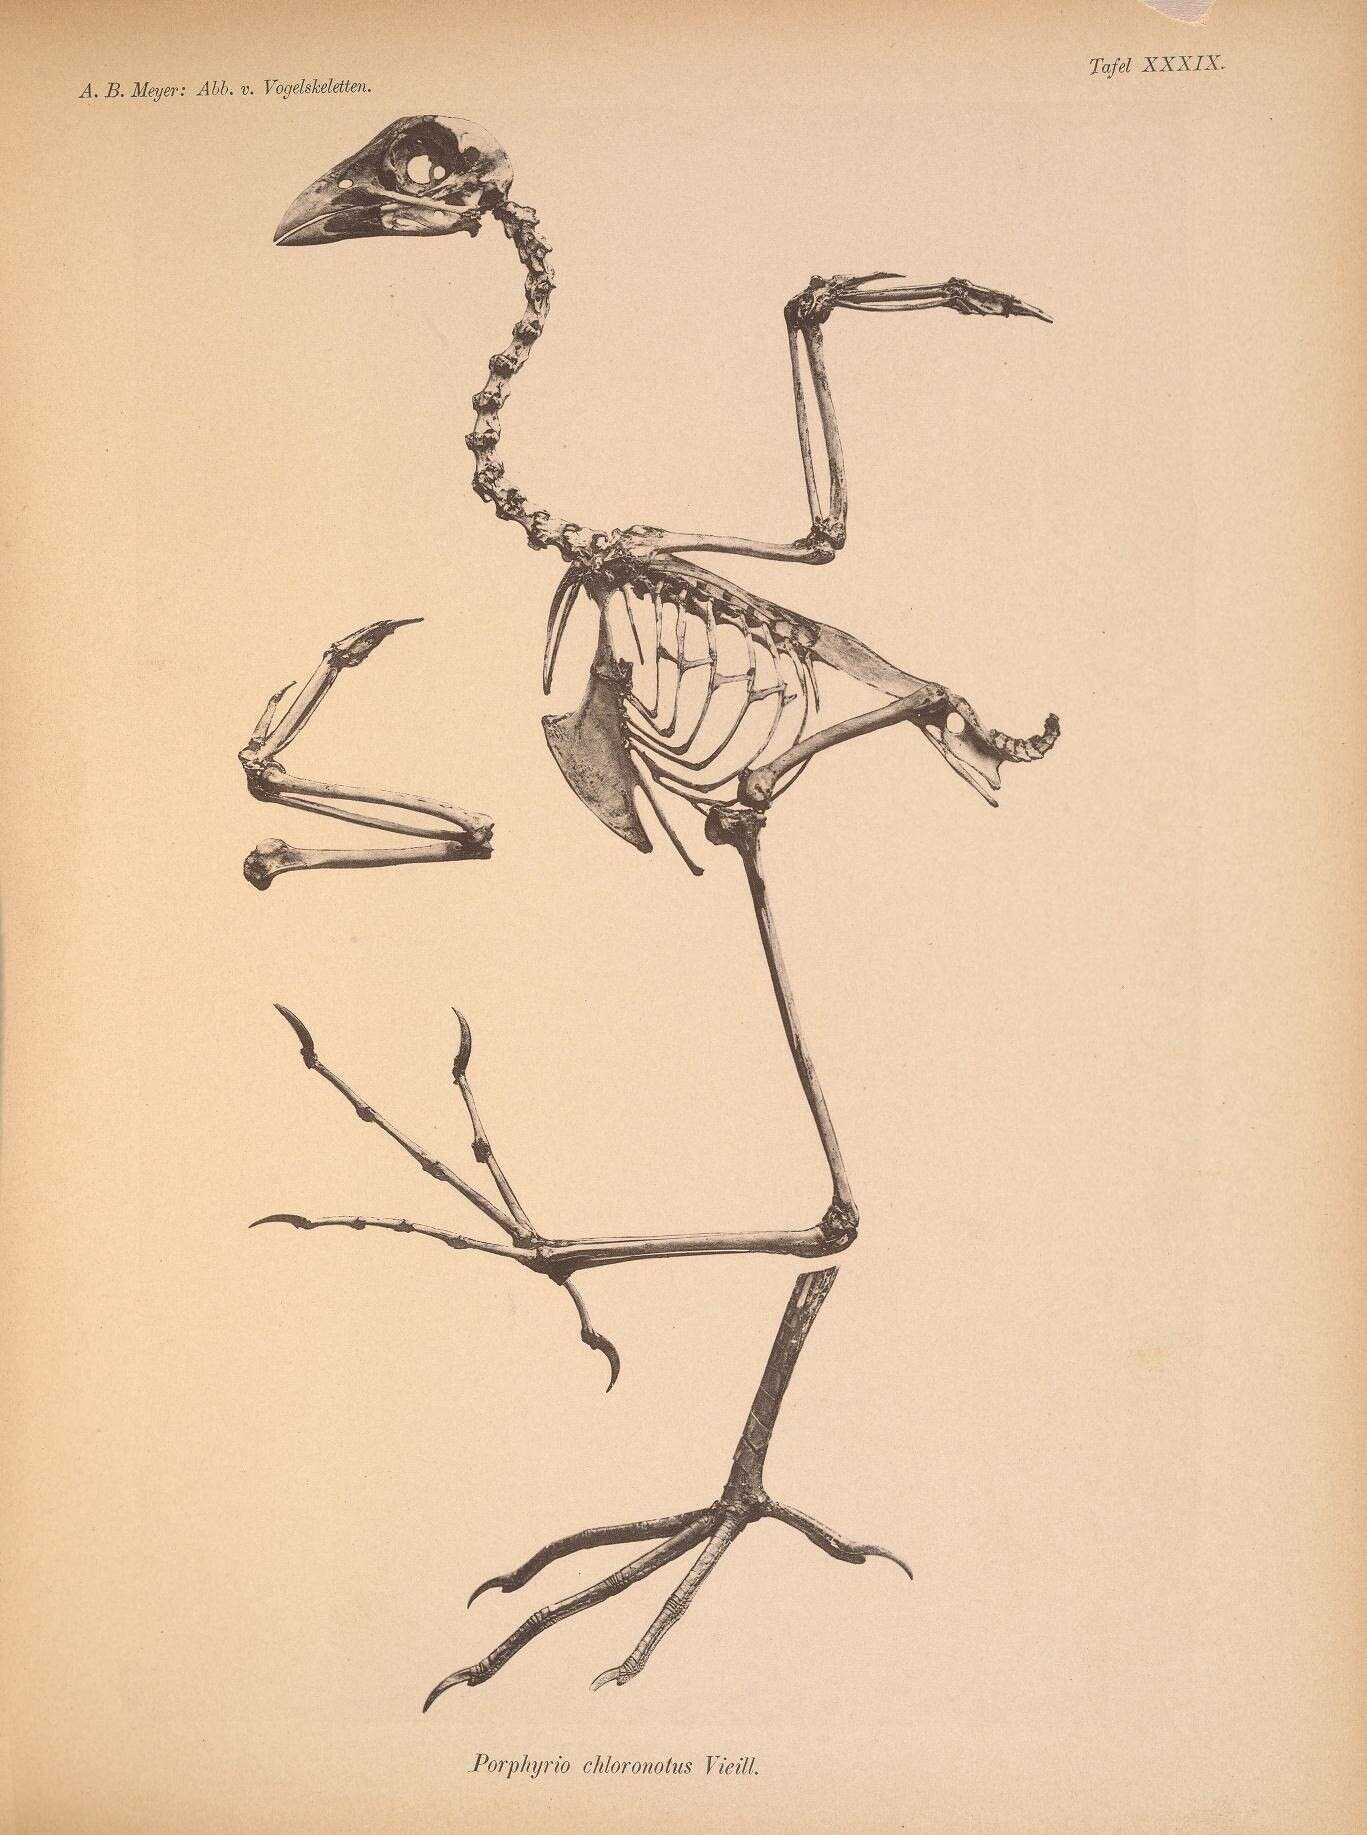 Image of Allen's Gallinule